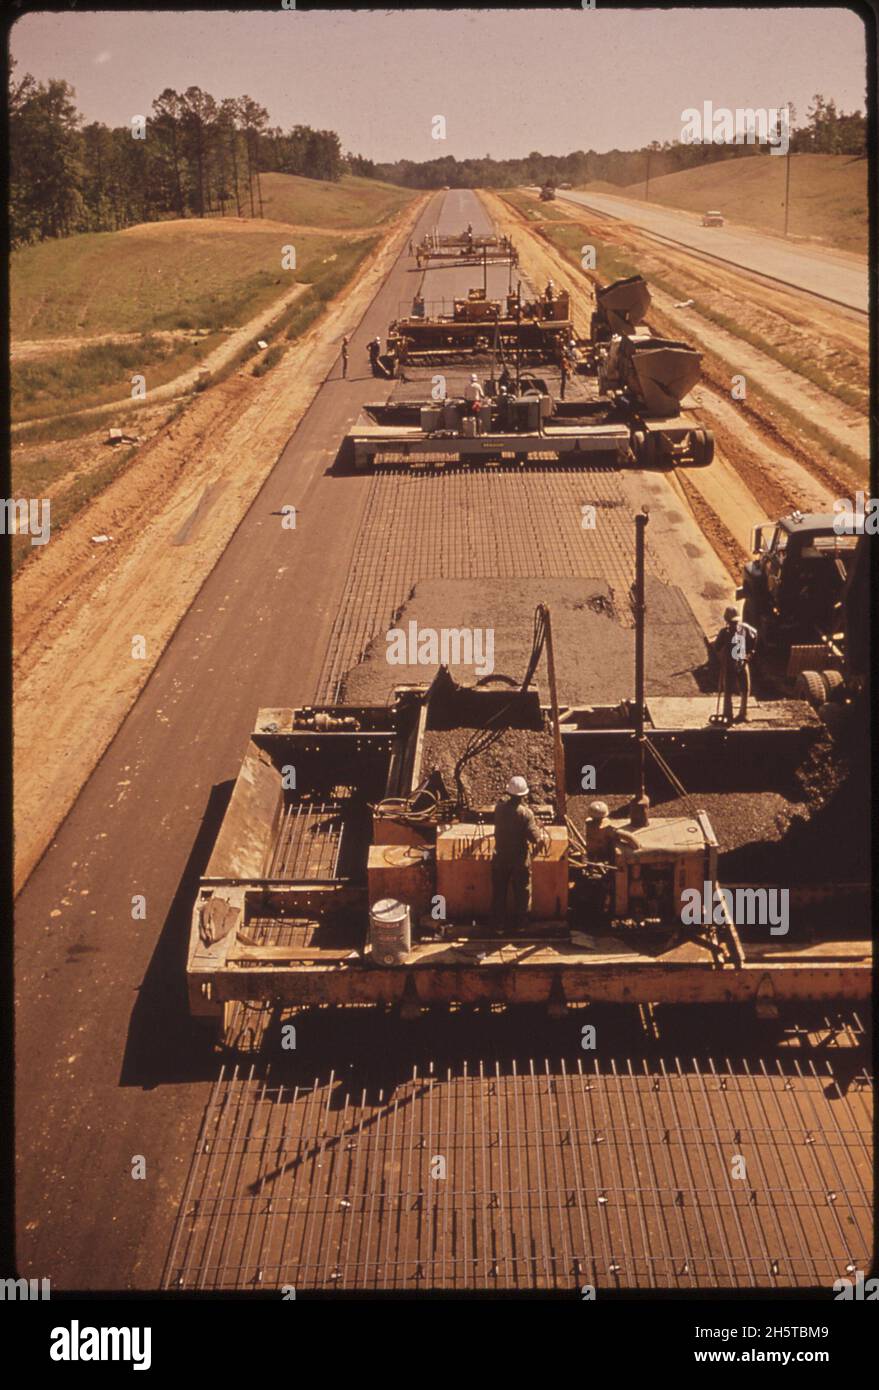 Stahlstäbe aus geschredderten Autos werden für die Verstärkung beim Bau dieses Abschnitts der I-55, nördlich von Durant, MS, verwendet. 5/1972. Stockfoto